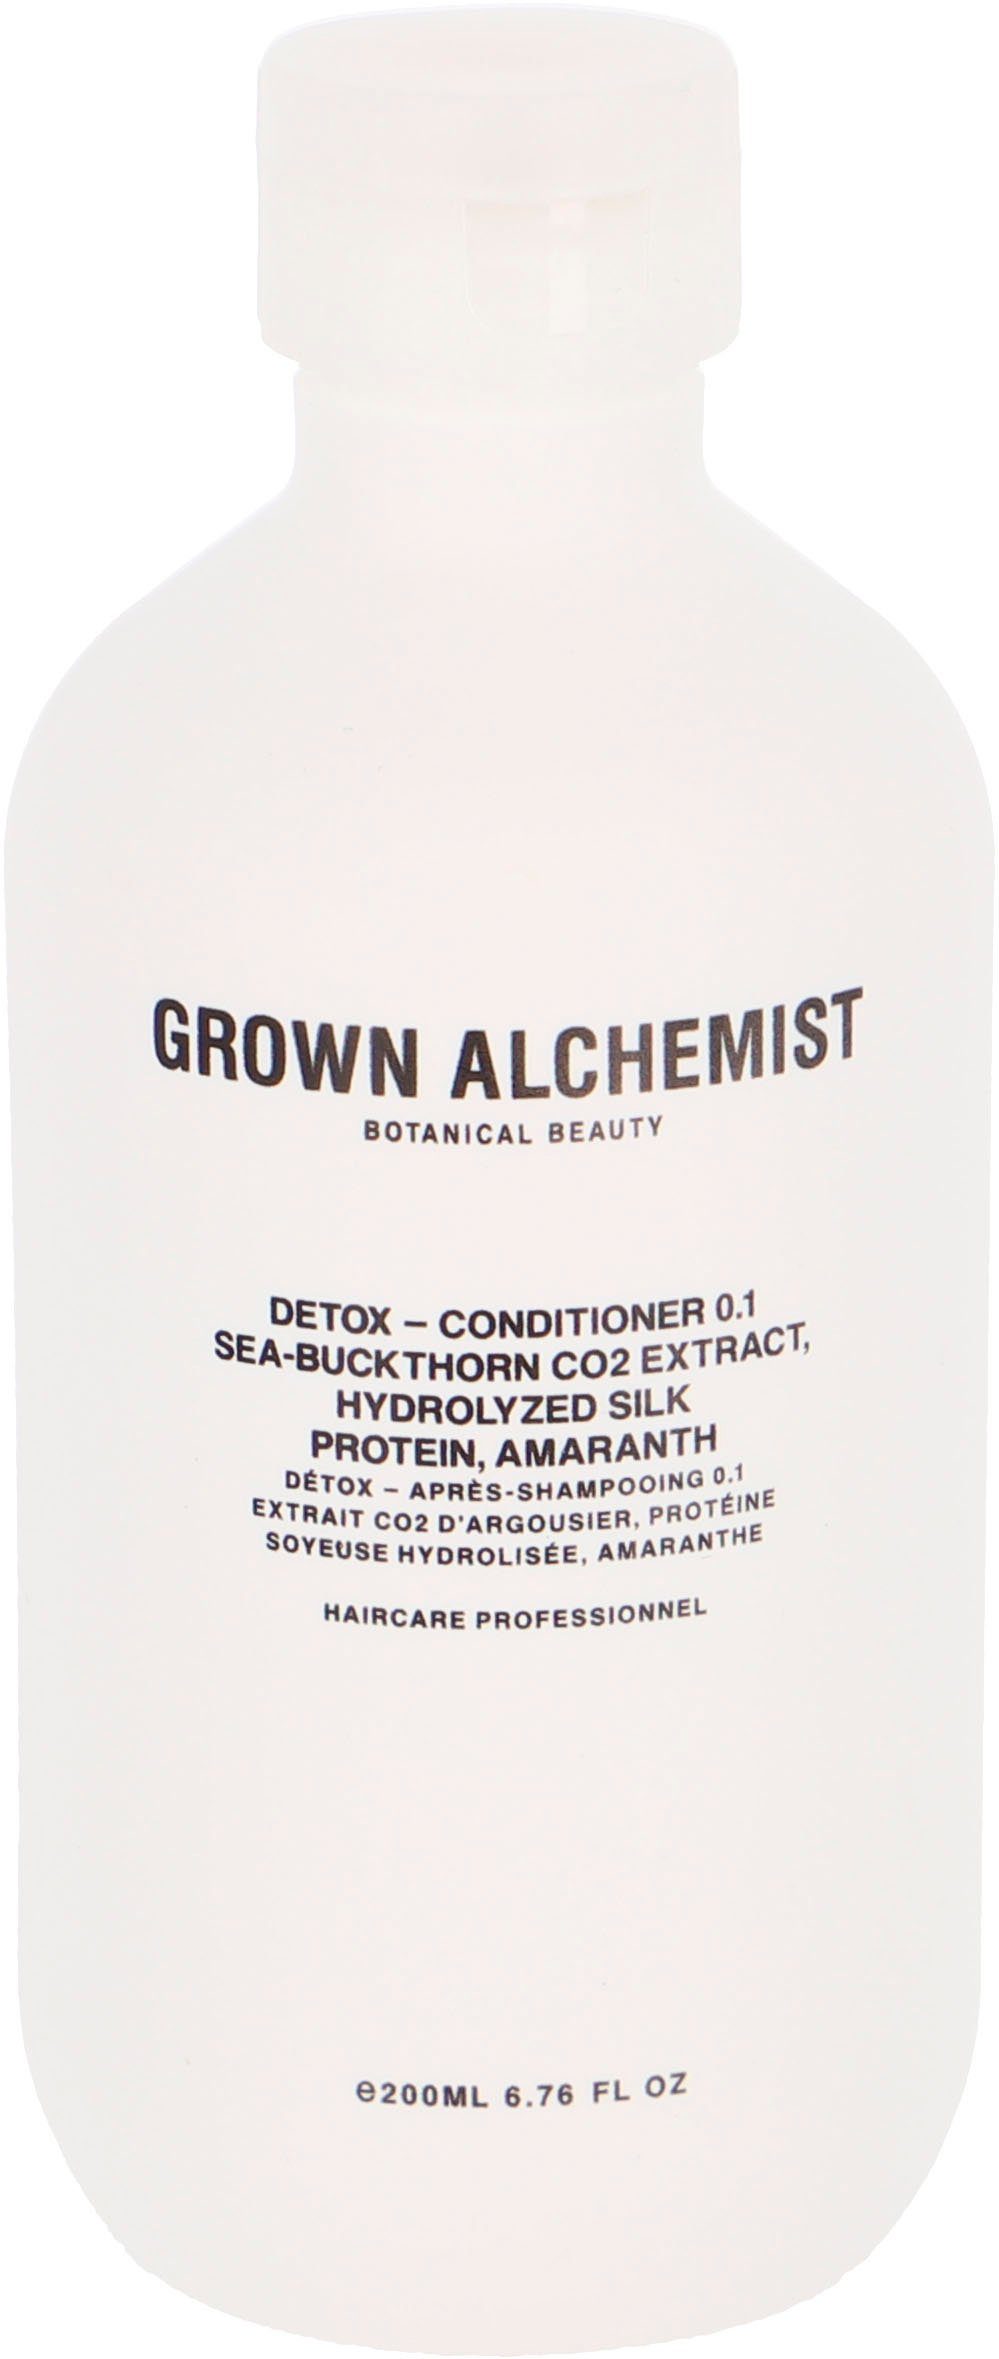 GROWN ALCHEMIST Haarspülung Detox ml 500 Conditioner Amaranth Hydrolyzed CO2 Sea-Buckthorn 0.1, - Extract, Protein, Silk